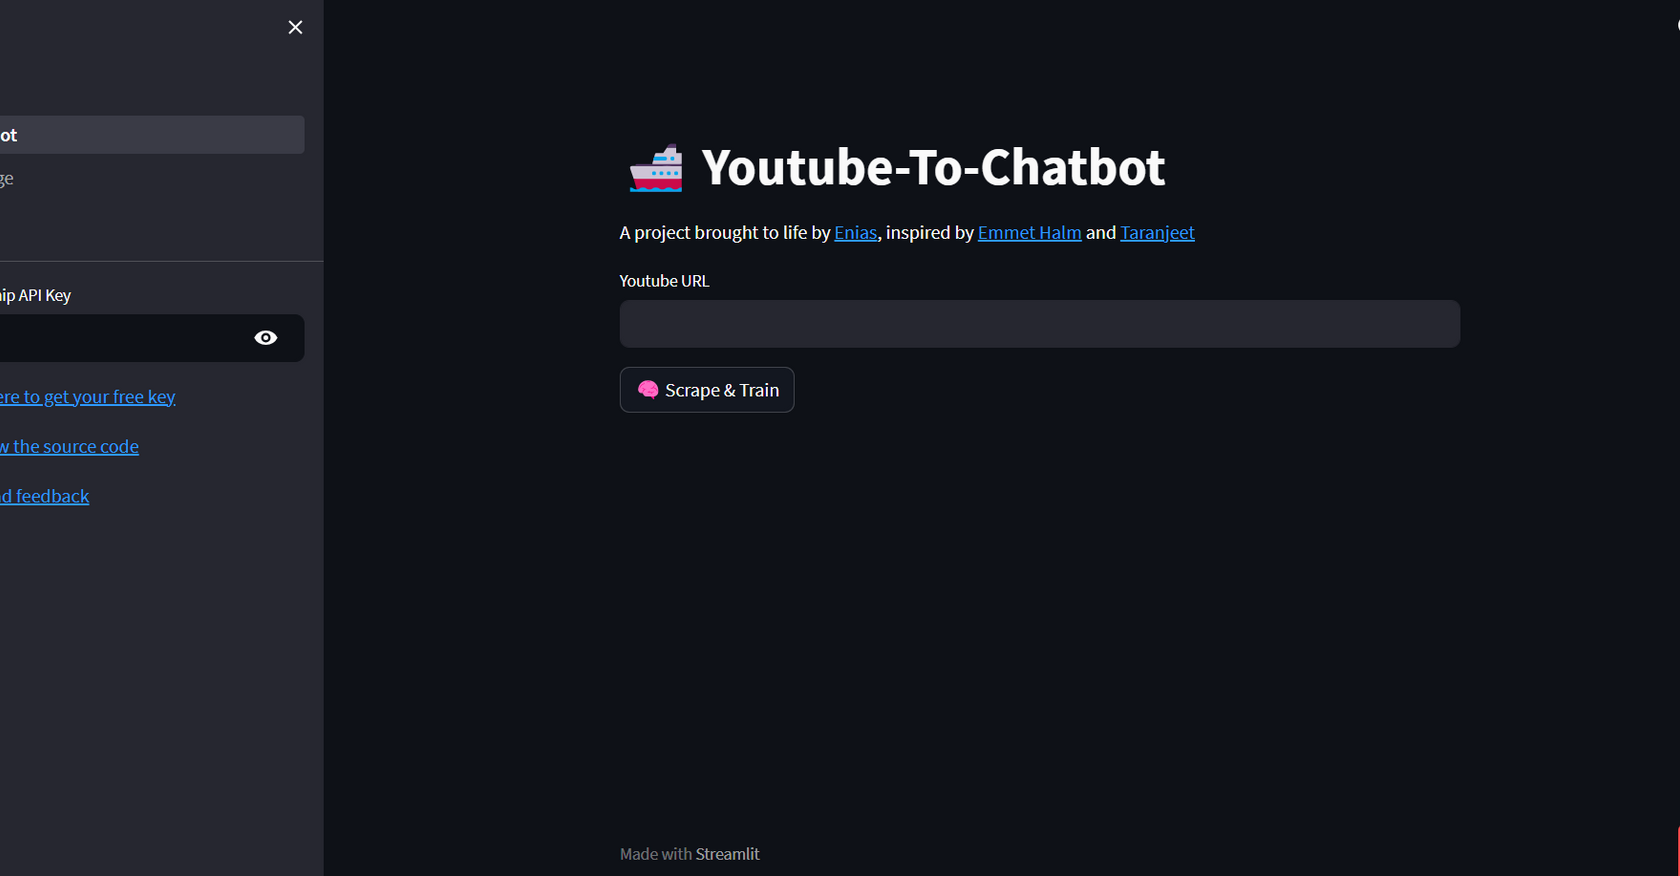 ThemotherAI - YouTube to Chatbot